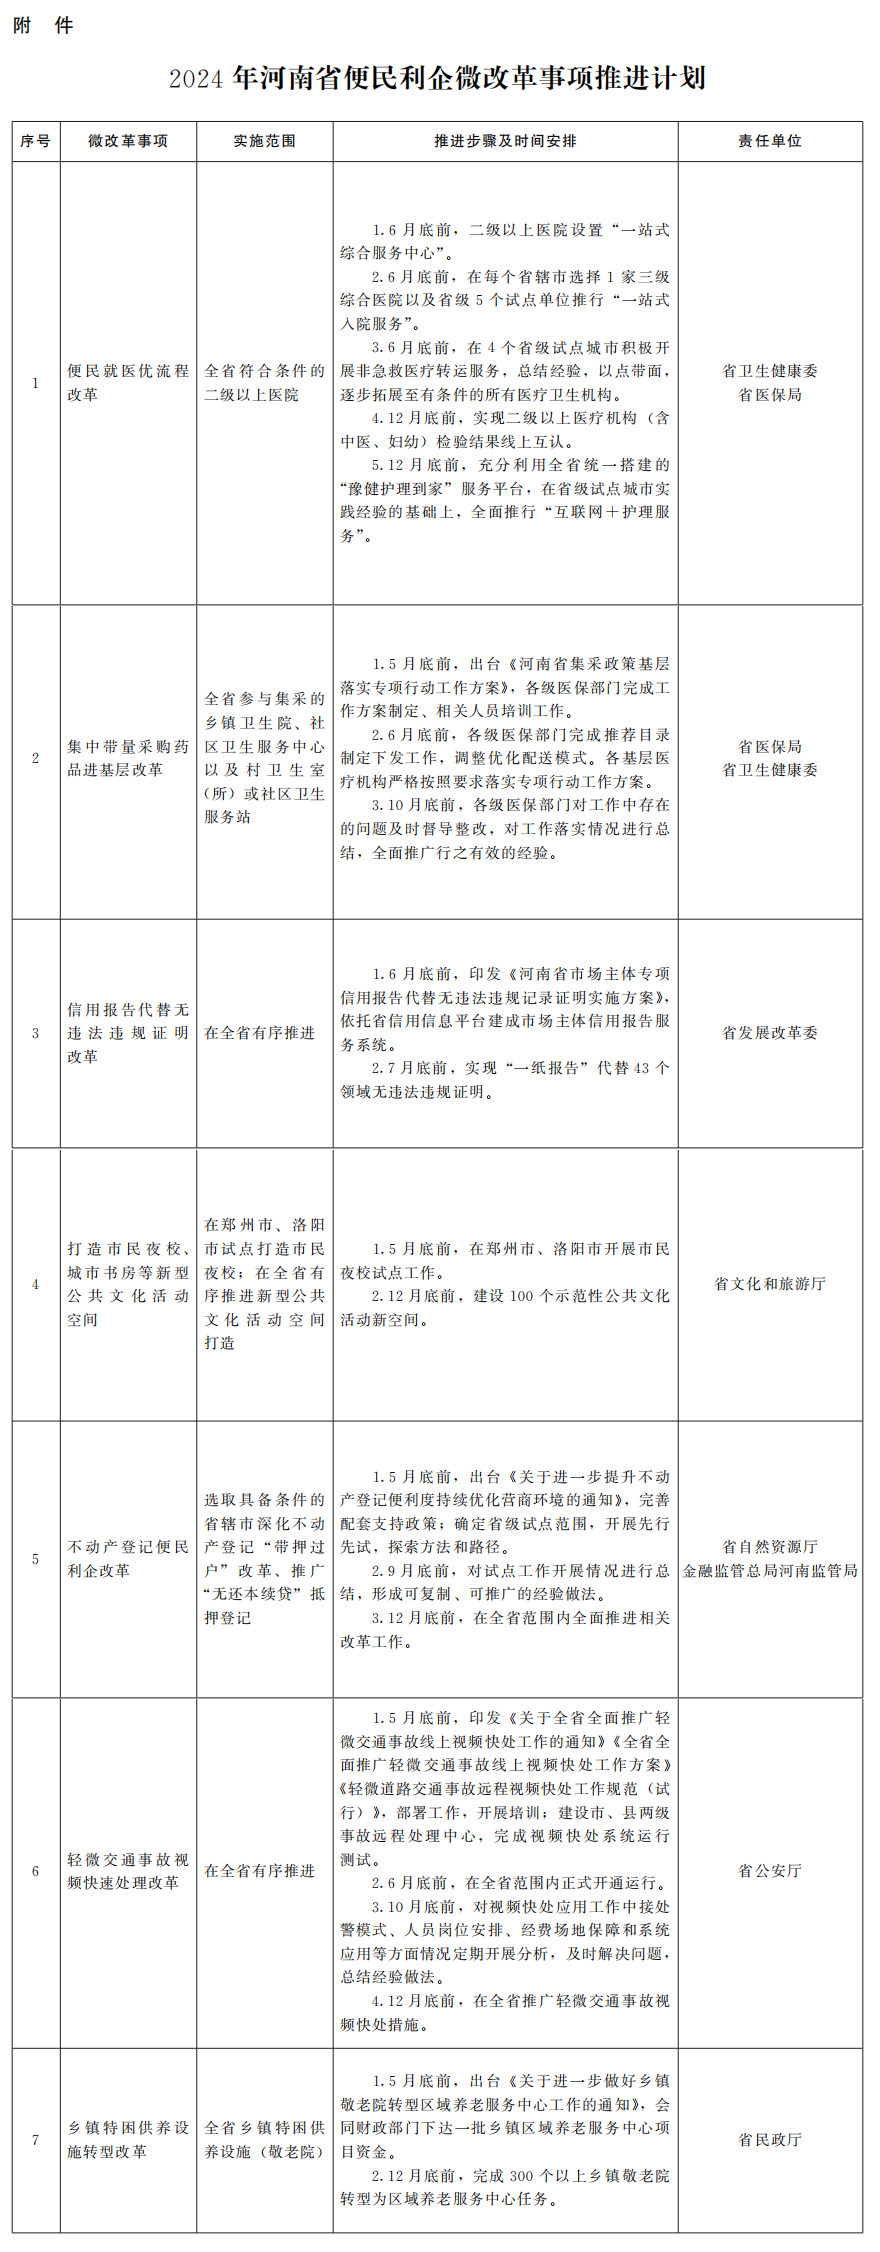 河南省人民政府办公厅关于印发2024年河南省便民利企微改革事项的通知